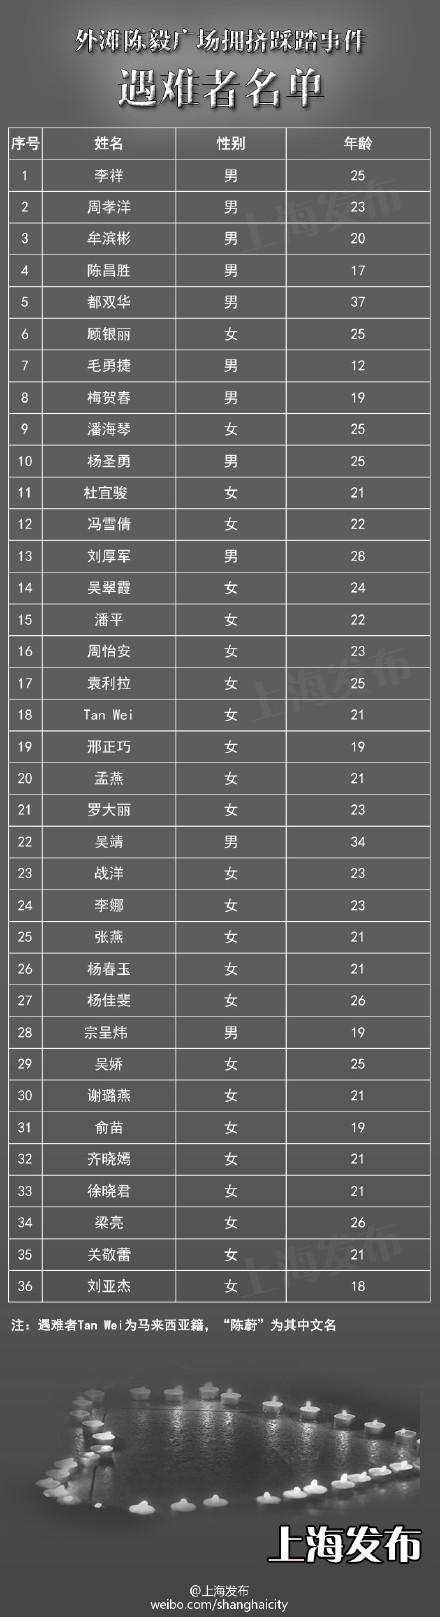 上海踩踏事故36名遇难者名单全部公布